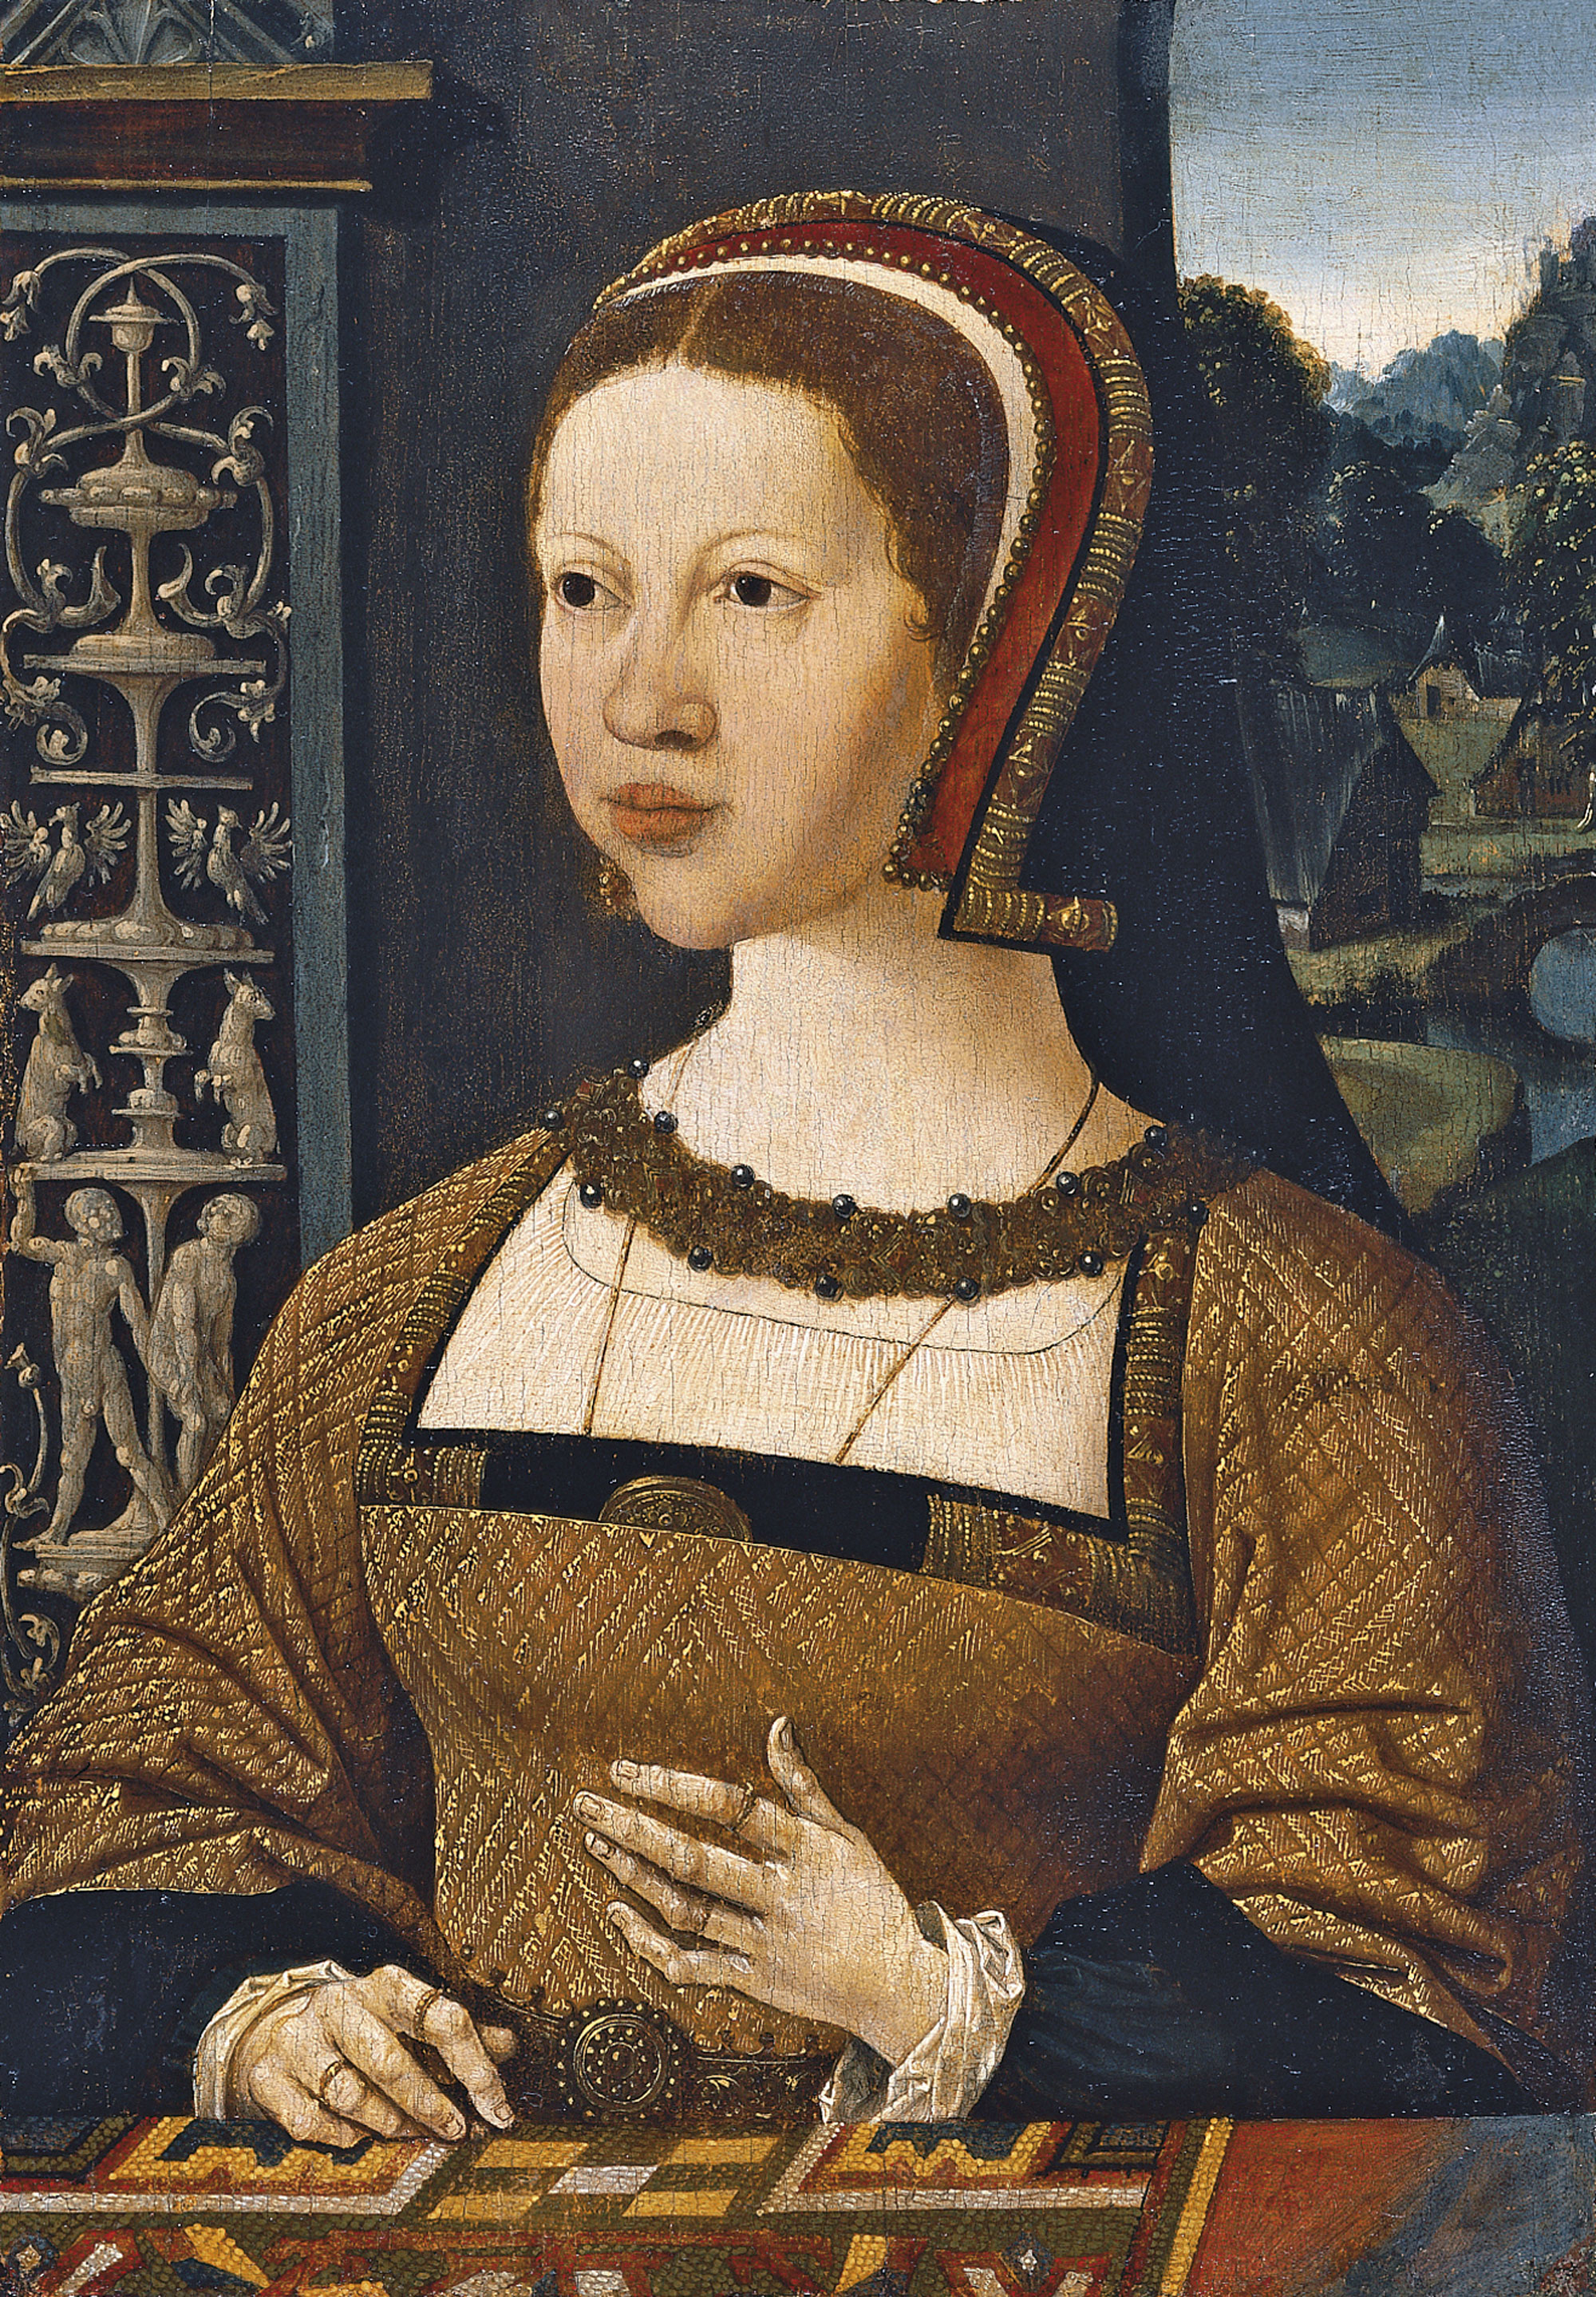 1524 - unknown, possibly Elizabeth of Denmark or Isabel de Dinamarca